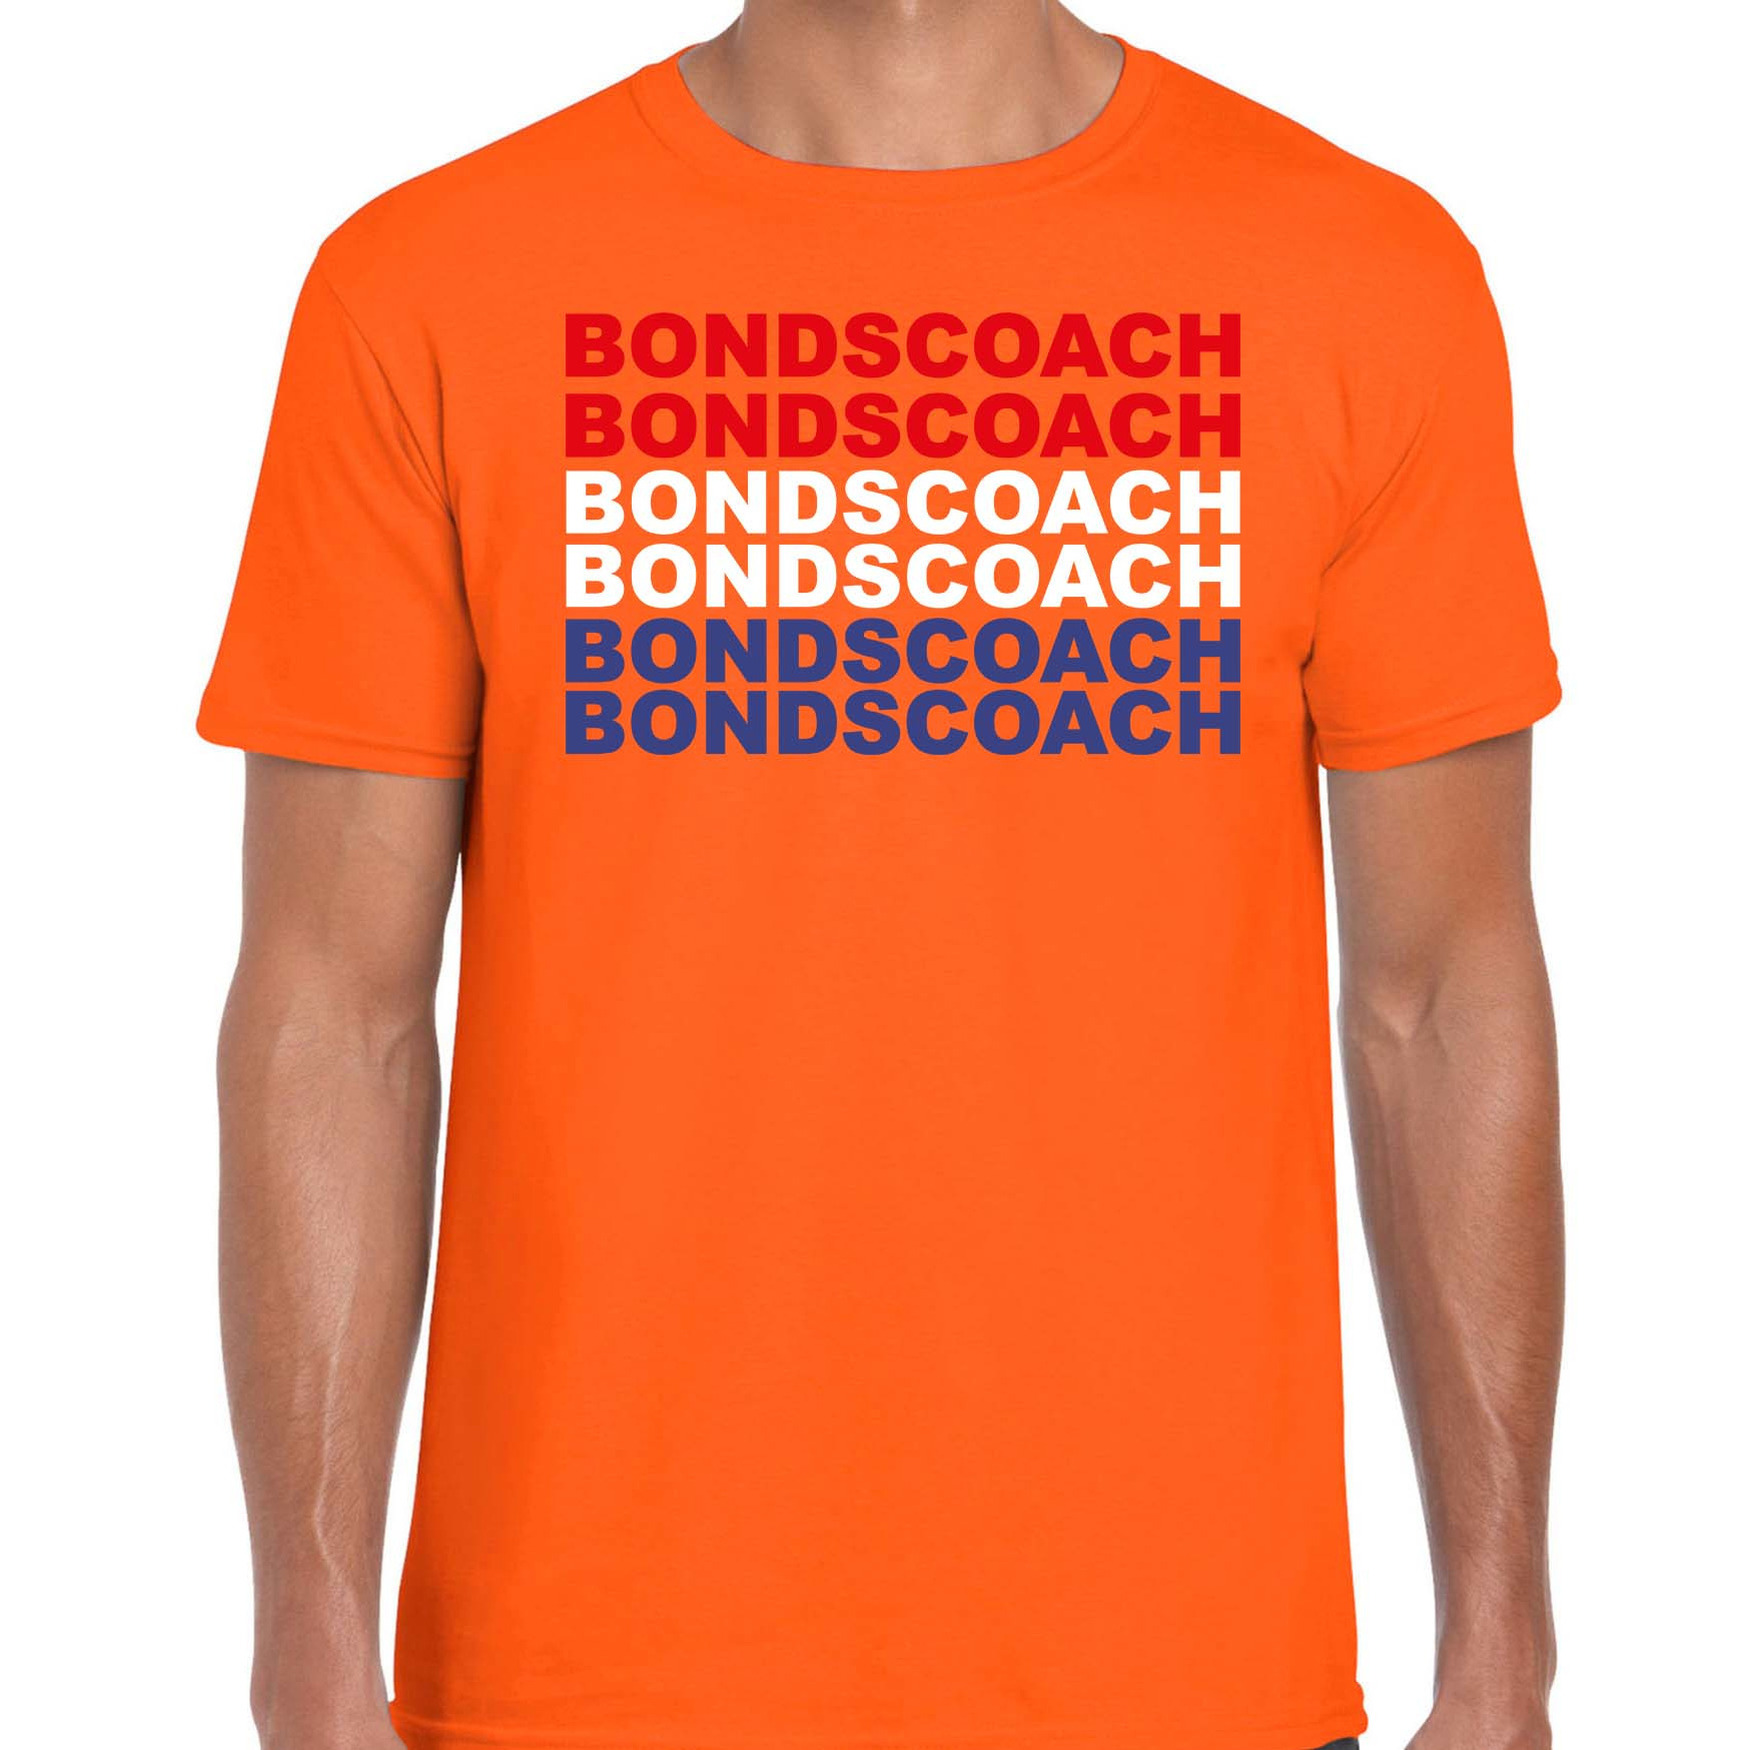 Bondscoach supporter t-shirt oranje voor heren - Nederlands elftal / EK/WK shirts